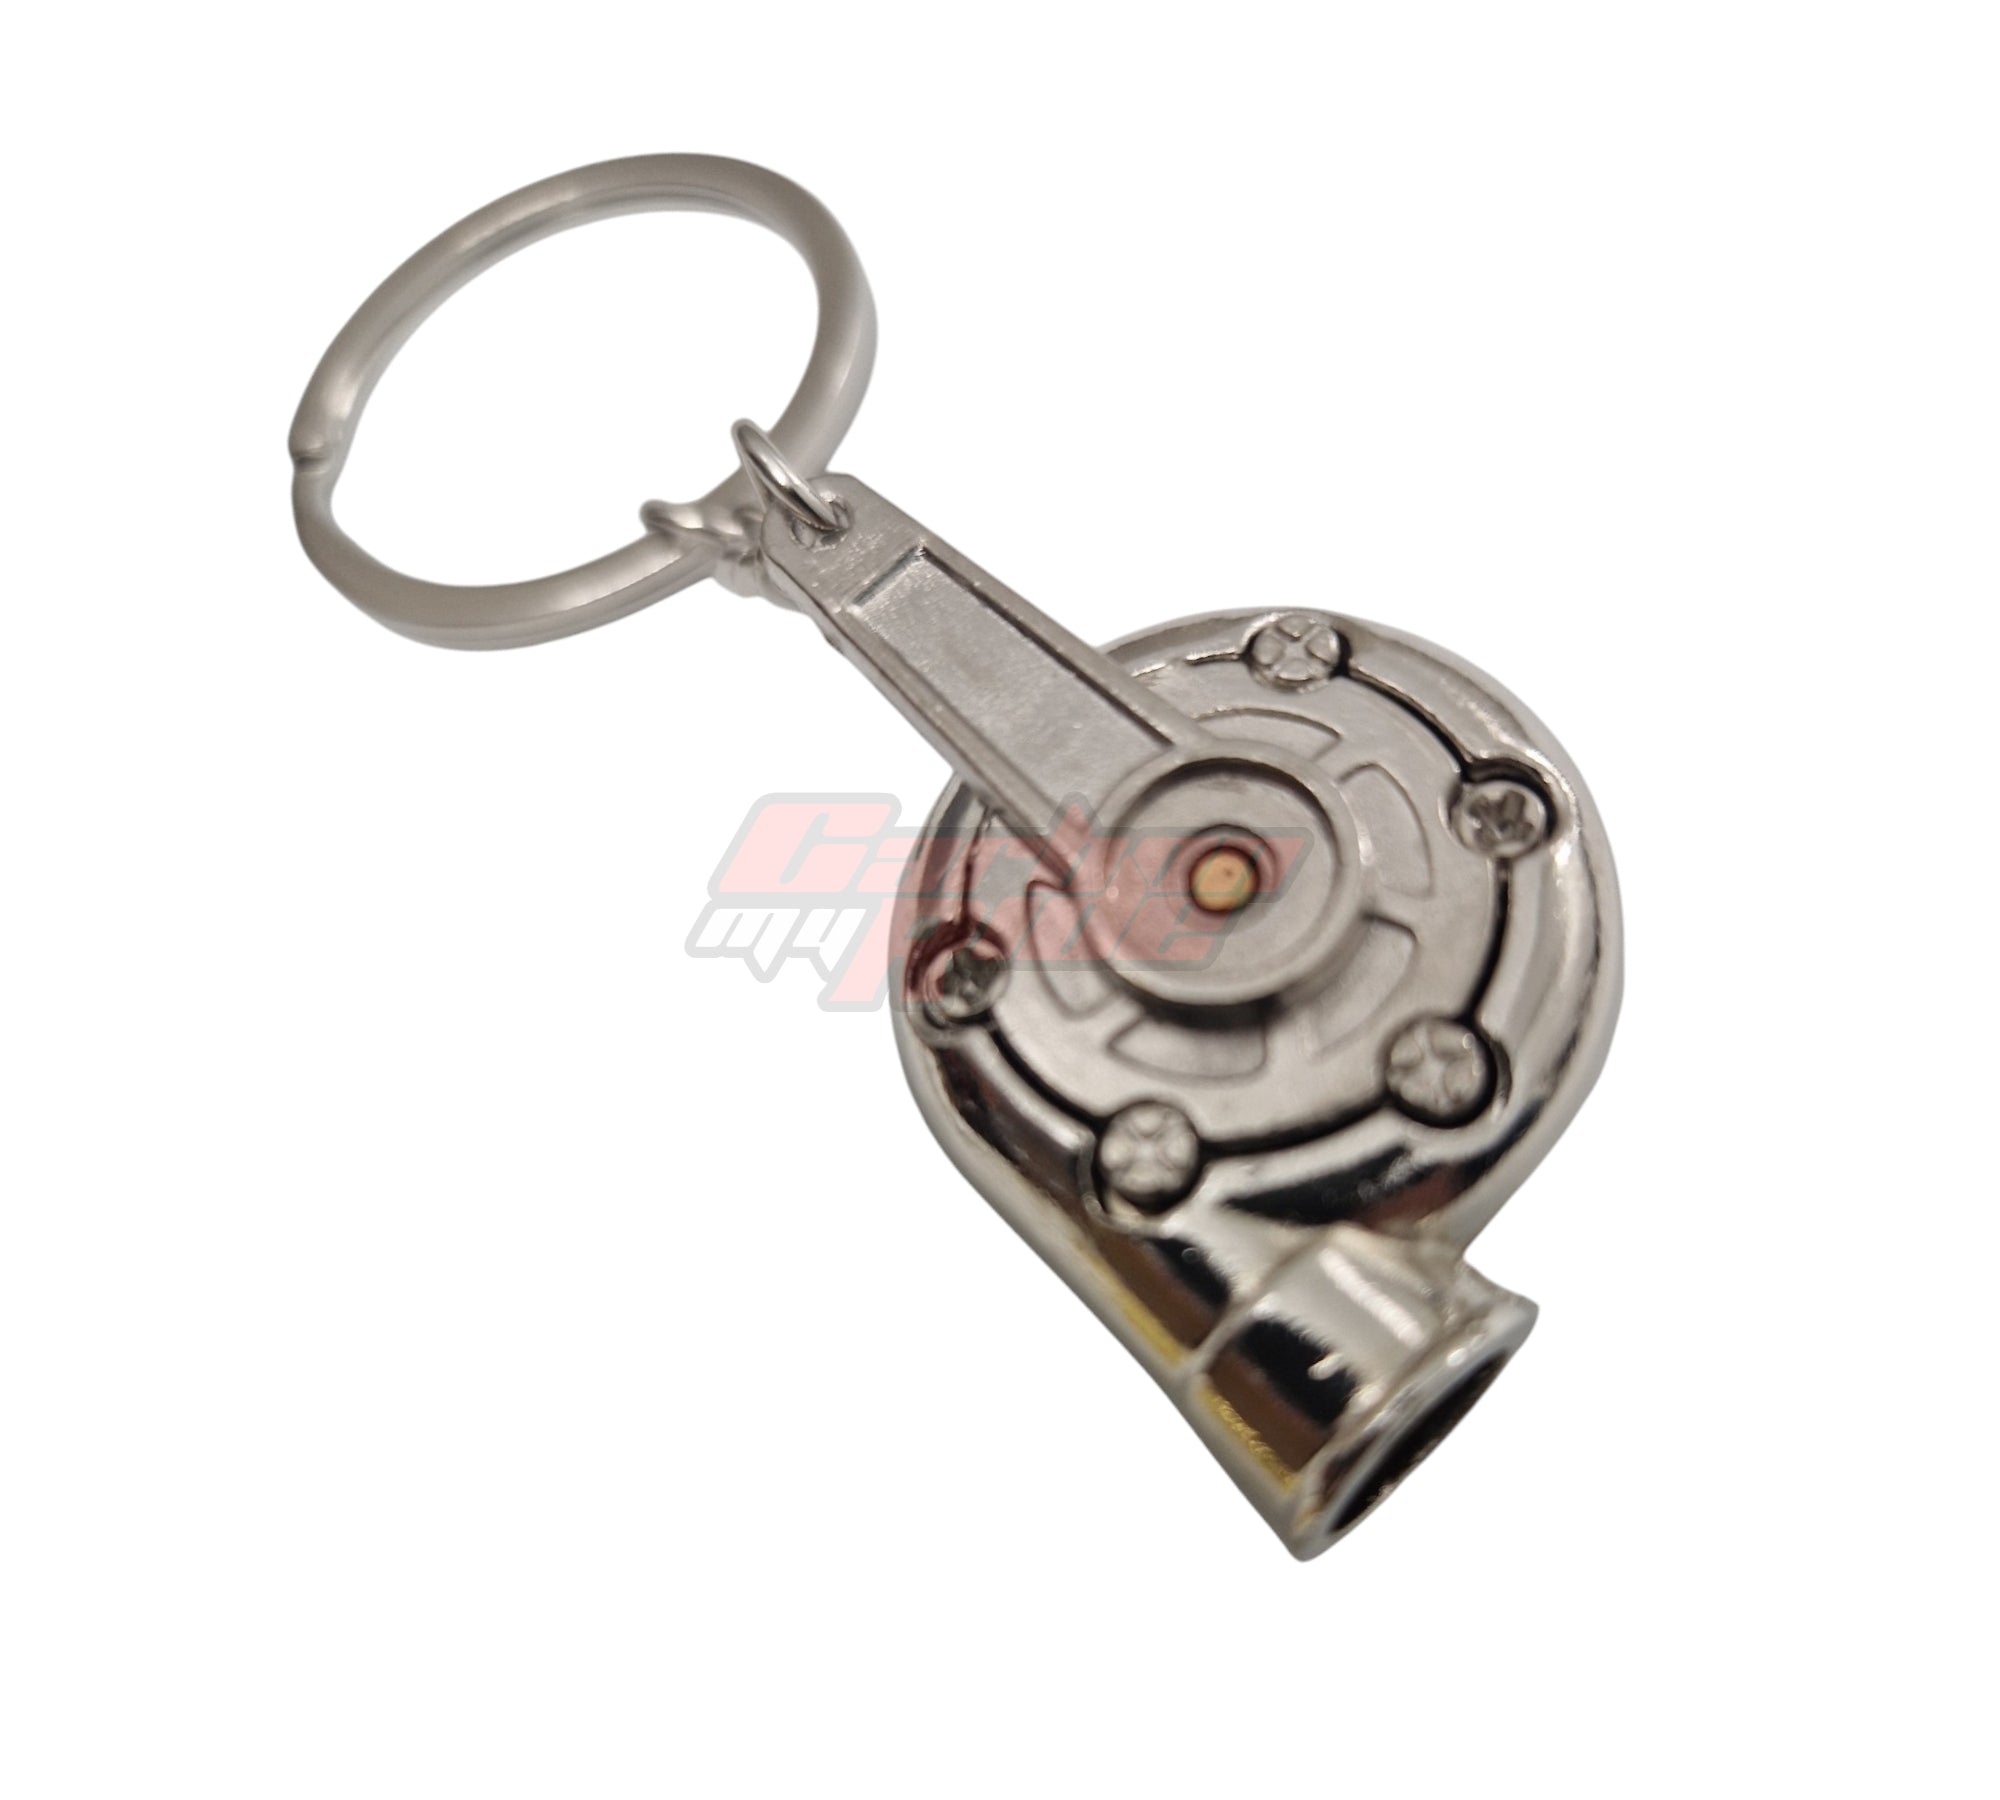 Miniature Turbo Keychain Keyring